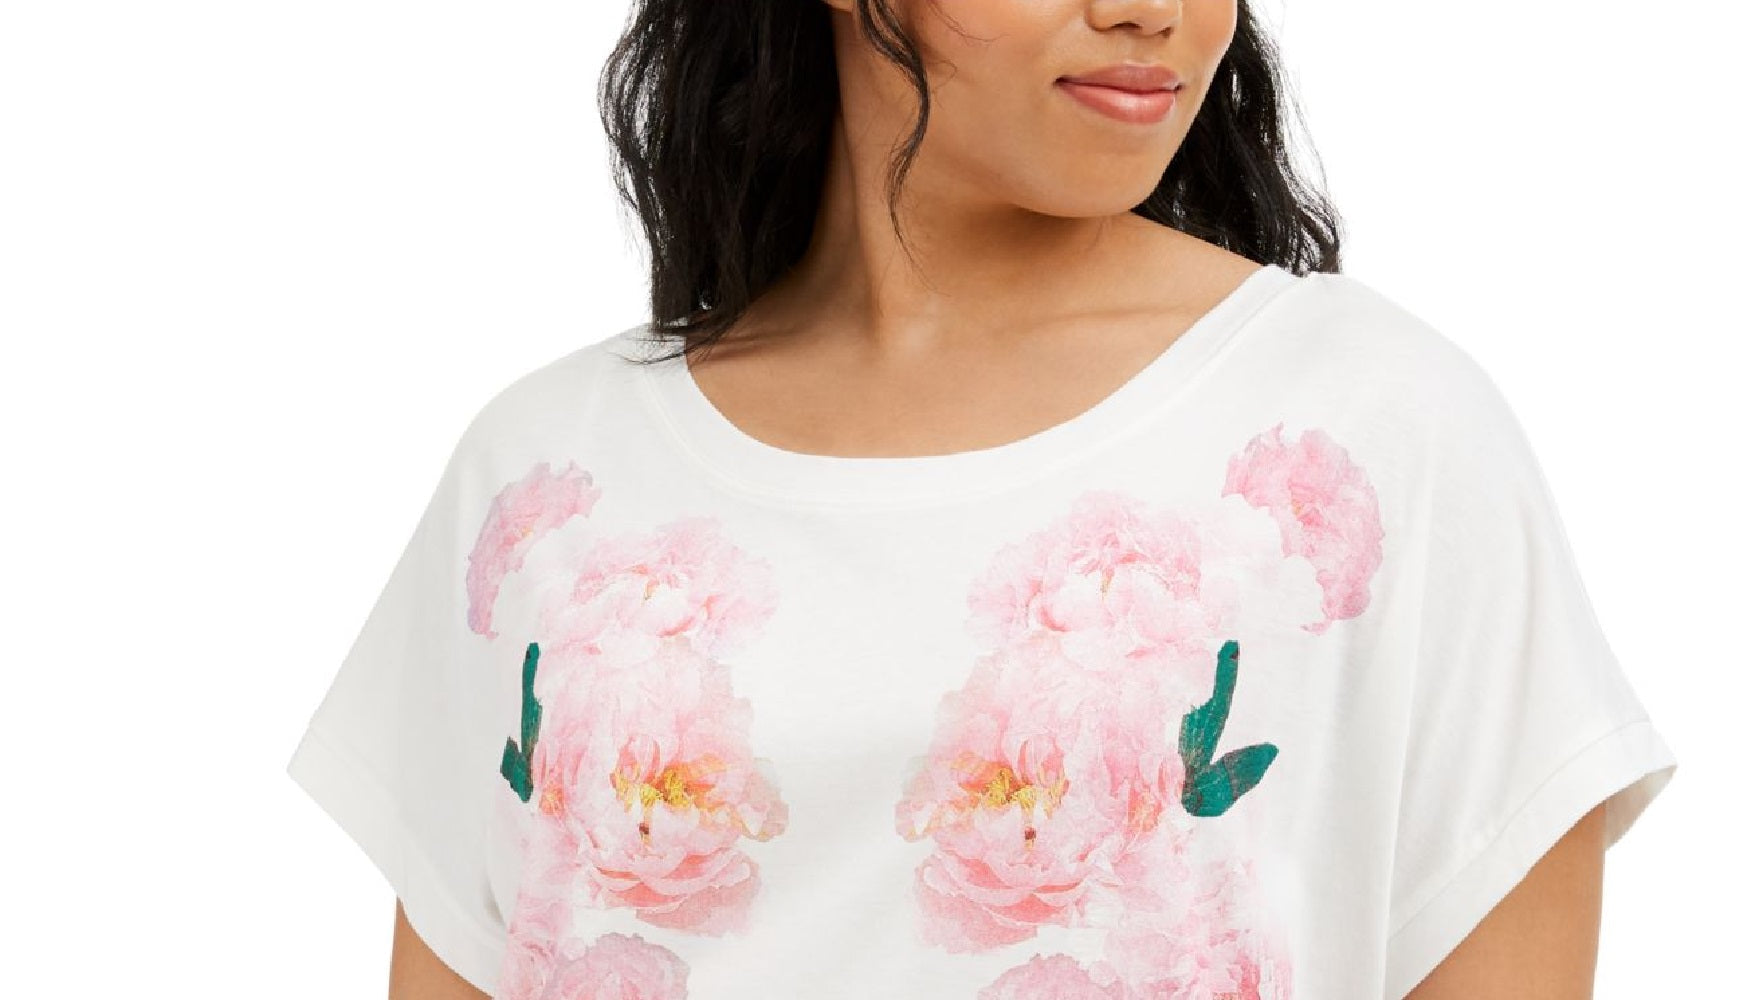 Tommy Hilfiger Men's Plus Size Floral-Print T-Shirt White Size 1X